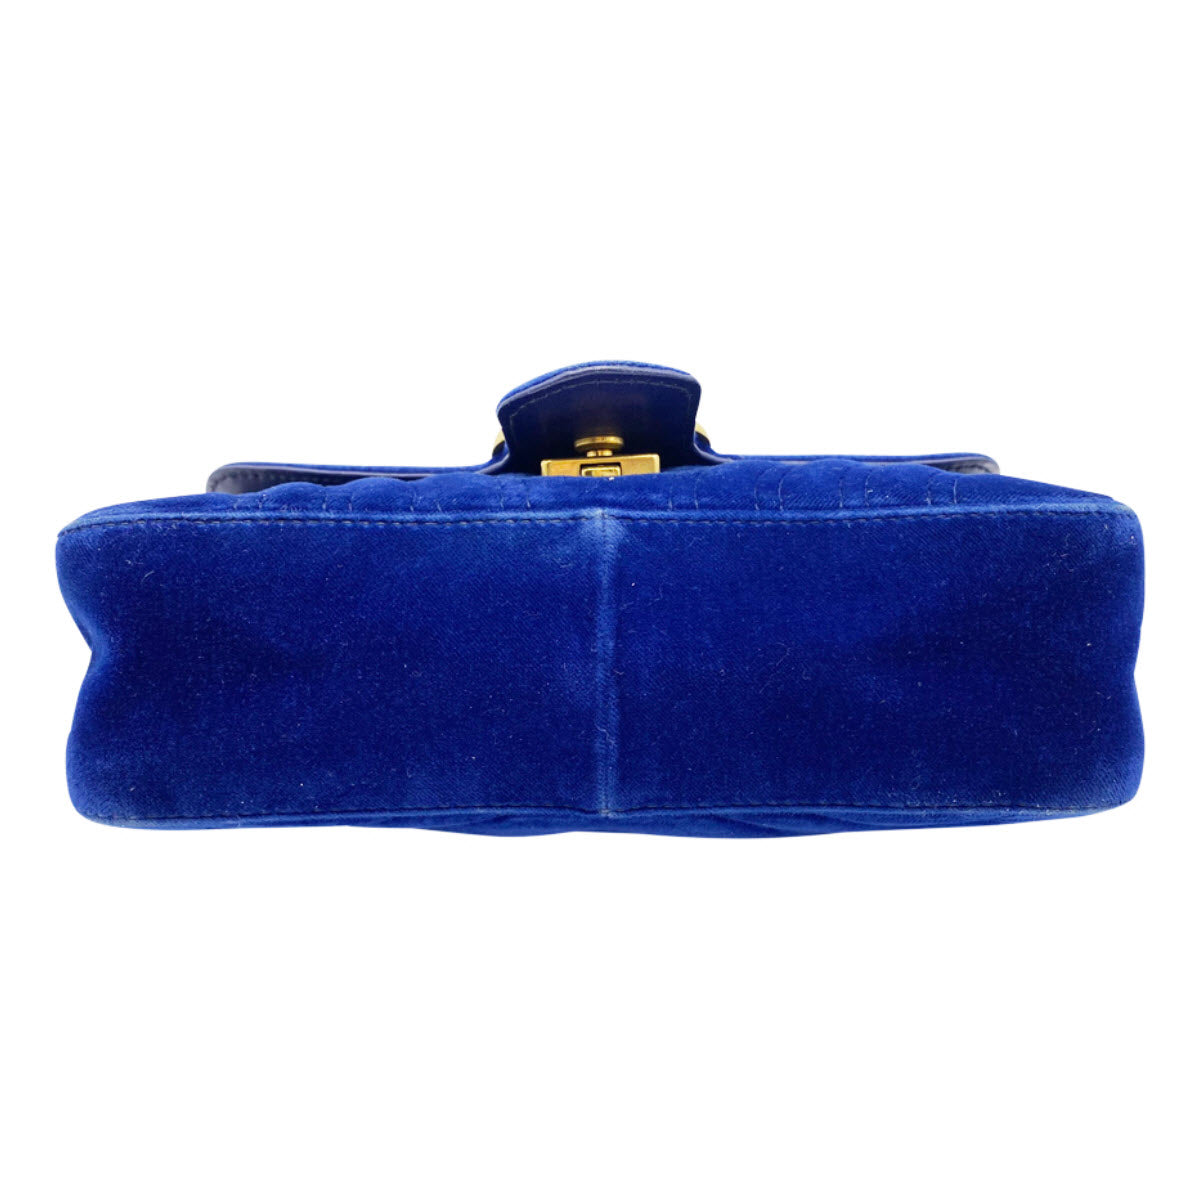 GUCCI GG Marmont Mini Velvet Shoulder Bag in Blue